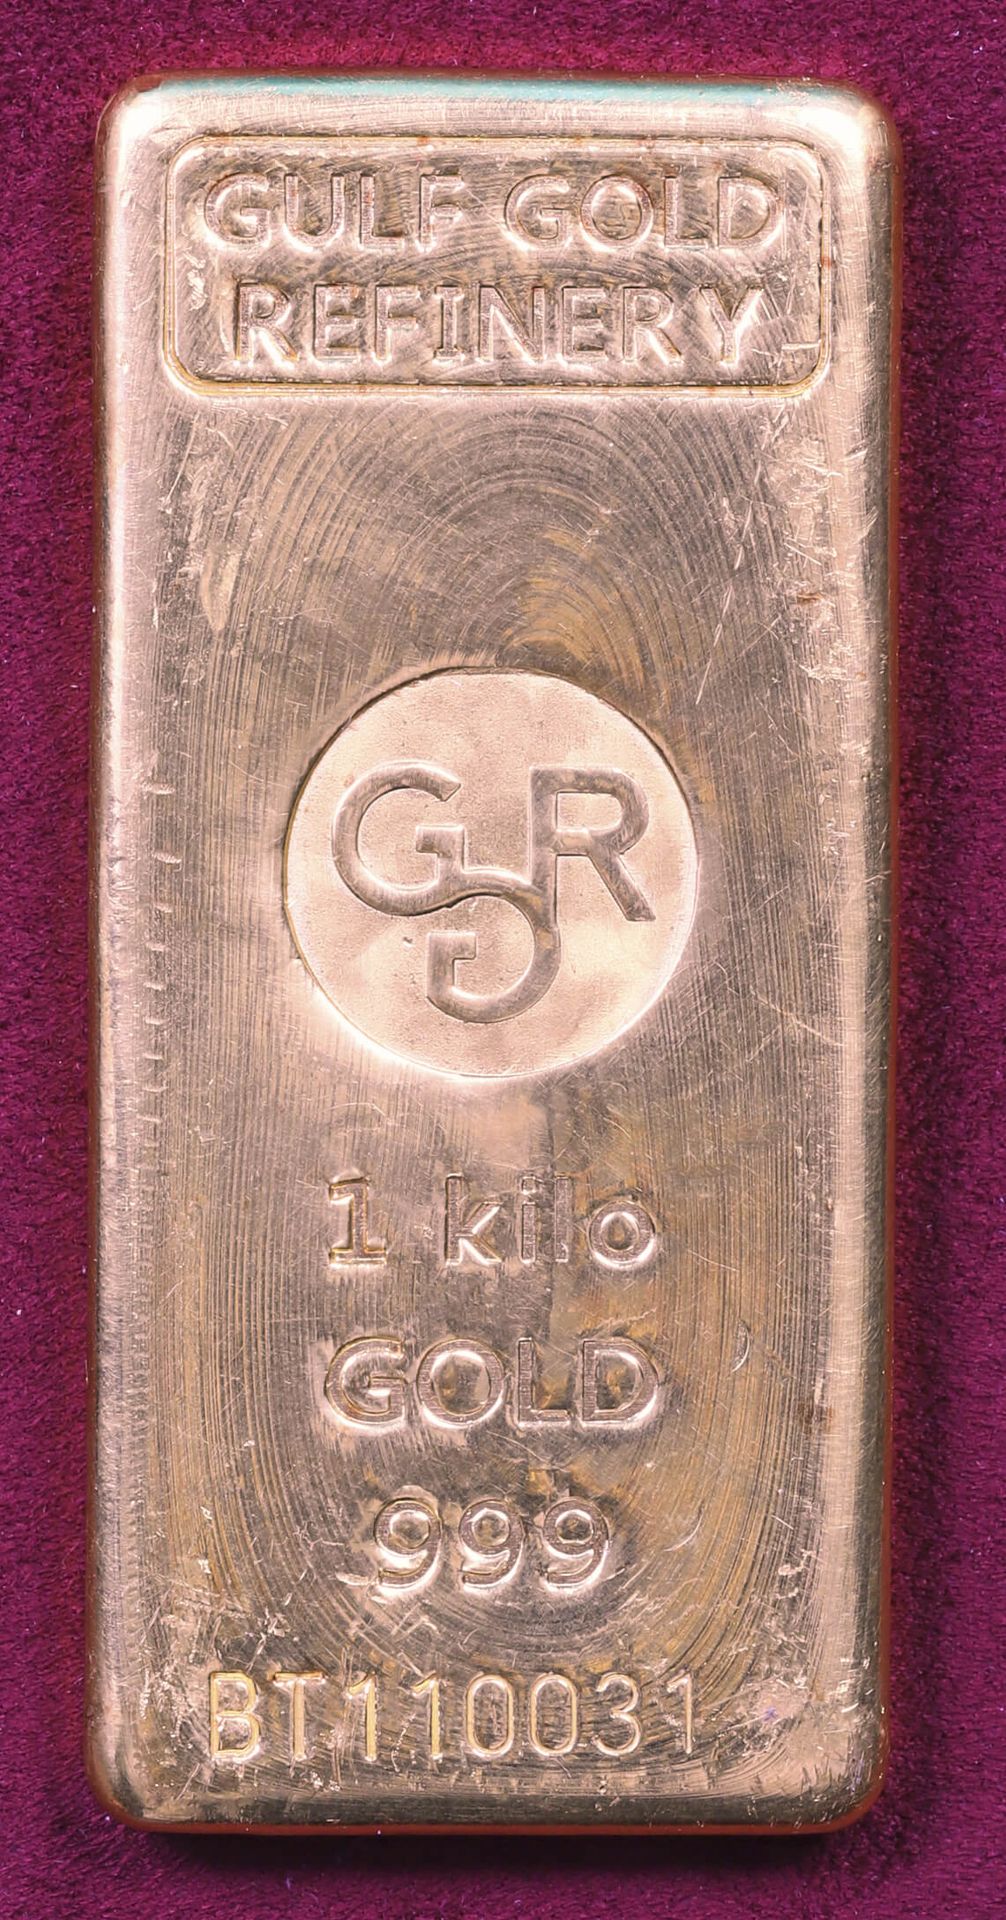 Null Lingotto d'oro (999‰)

Raffineria d'oro del Golfo

Numerato BT110031

Peso &hellip;